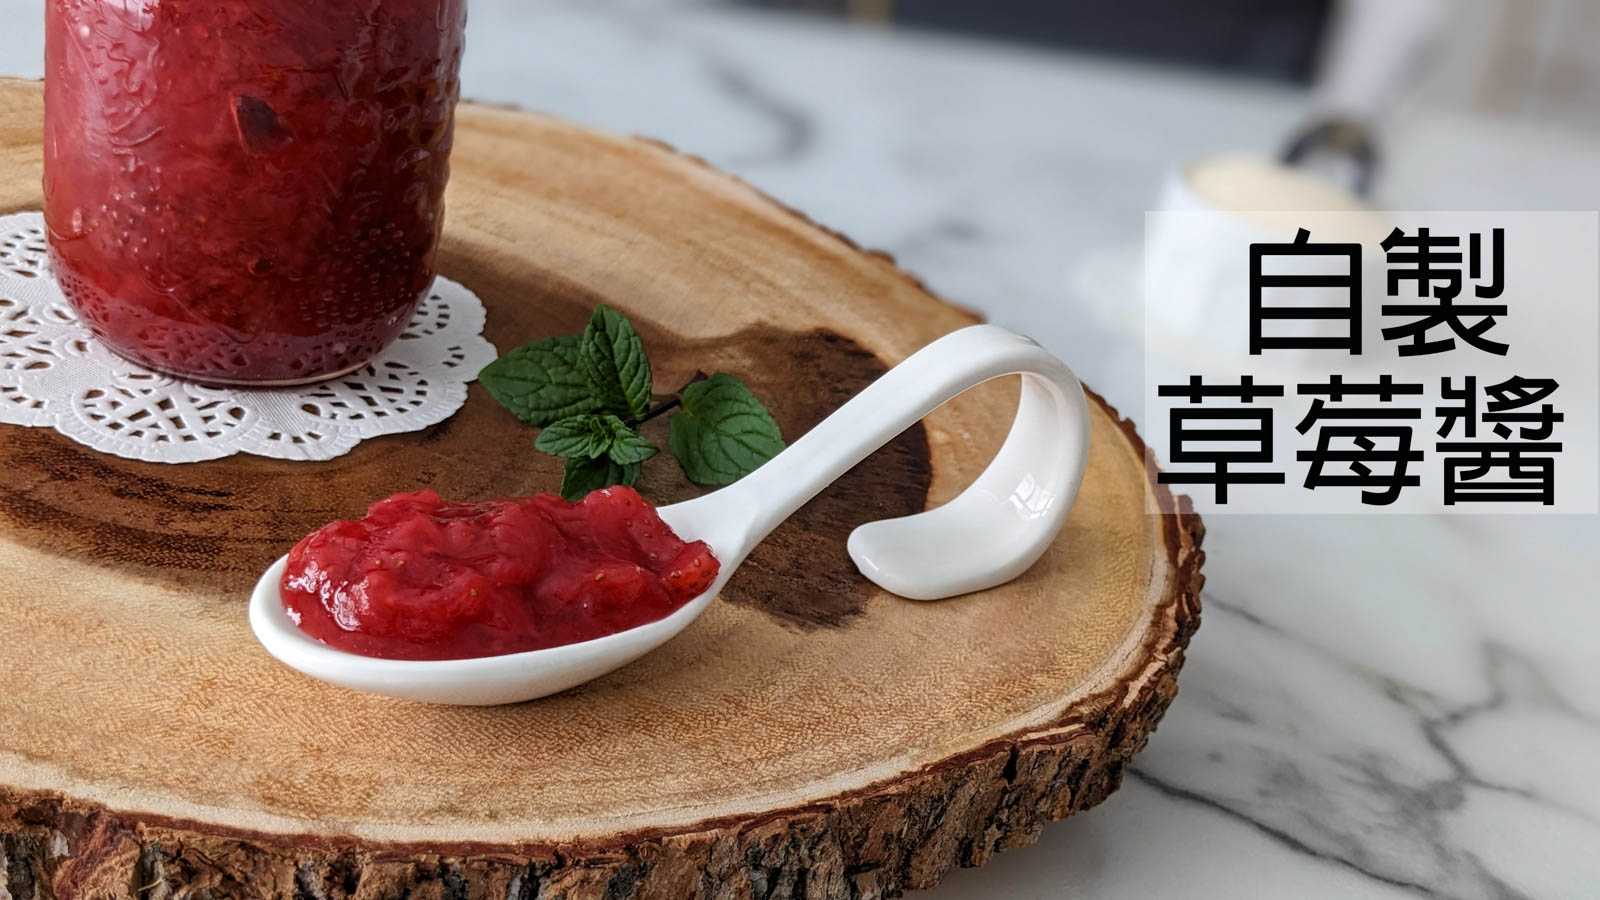 【自製草莓醬】3種材料就能簡單完成～吃的到果粒的美味草莓醬☆Strawberry Jam